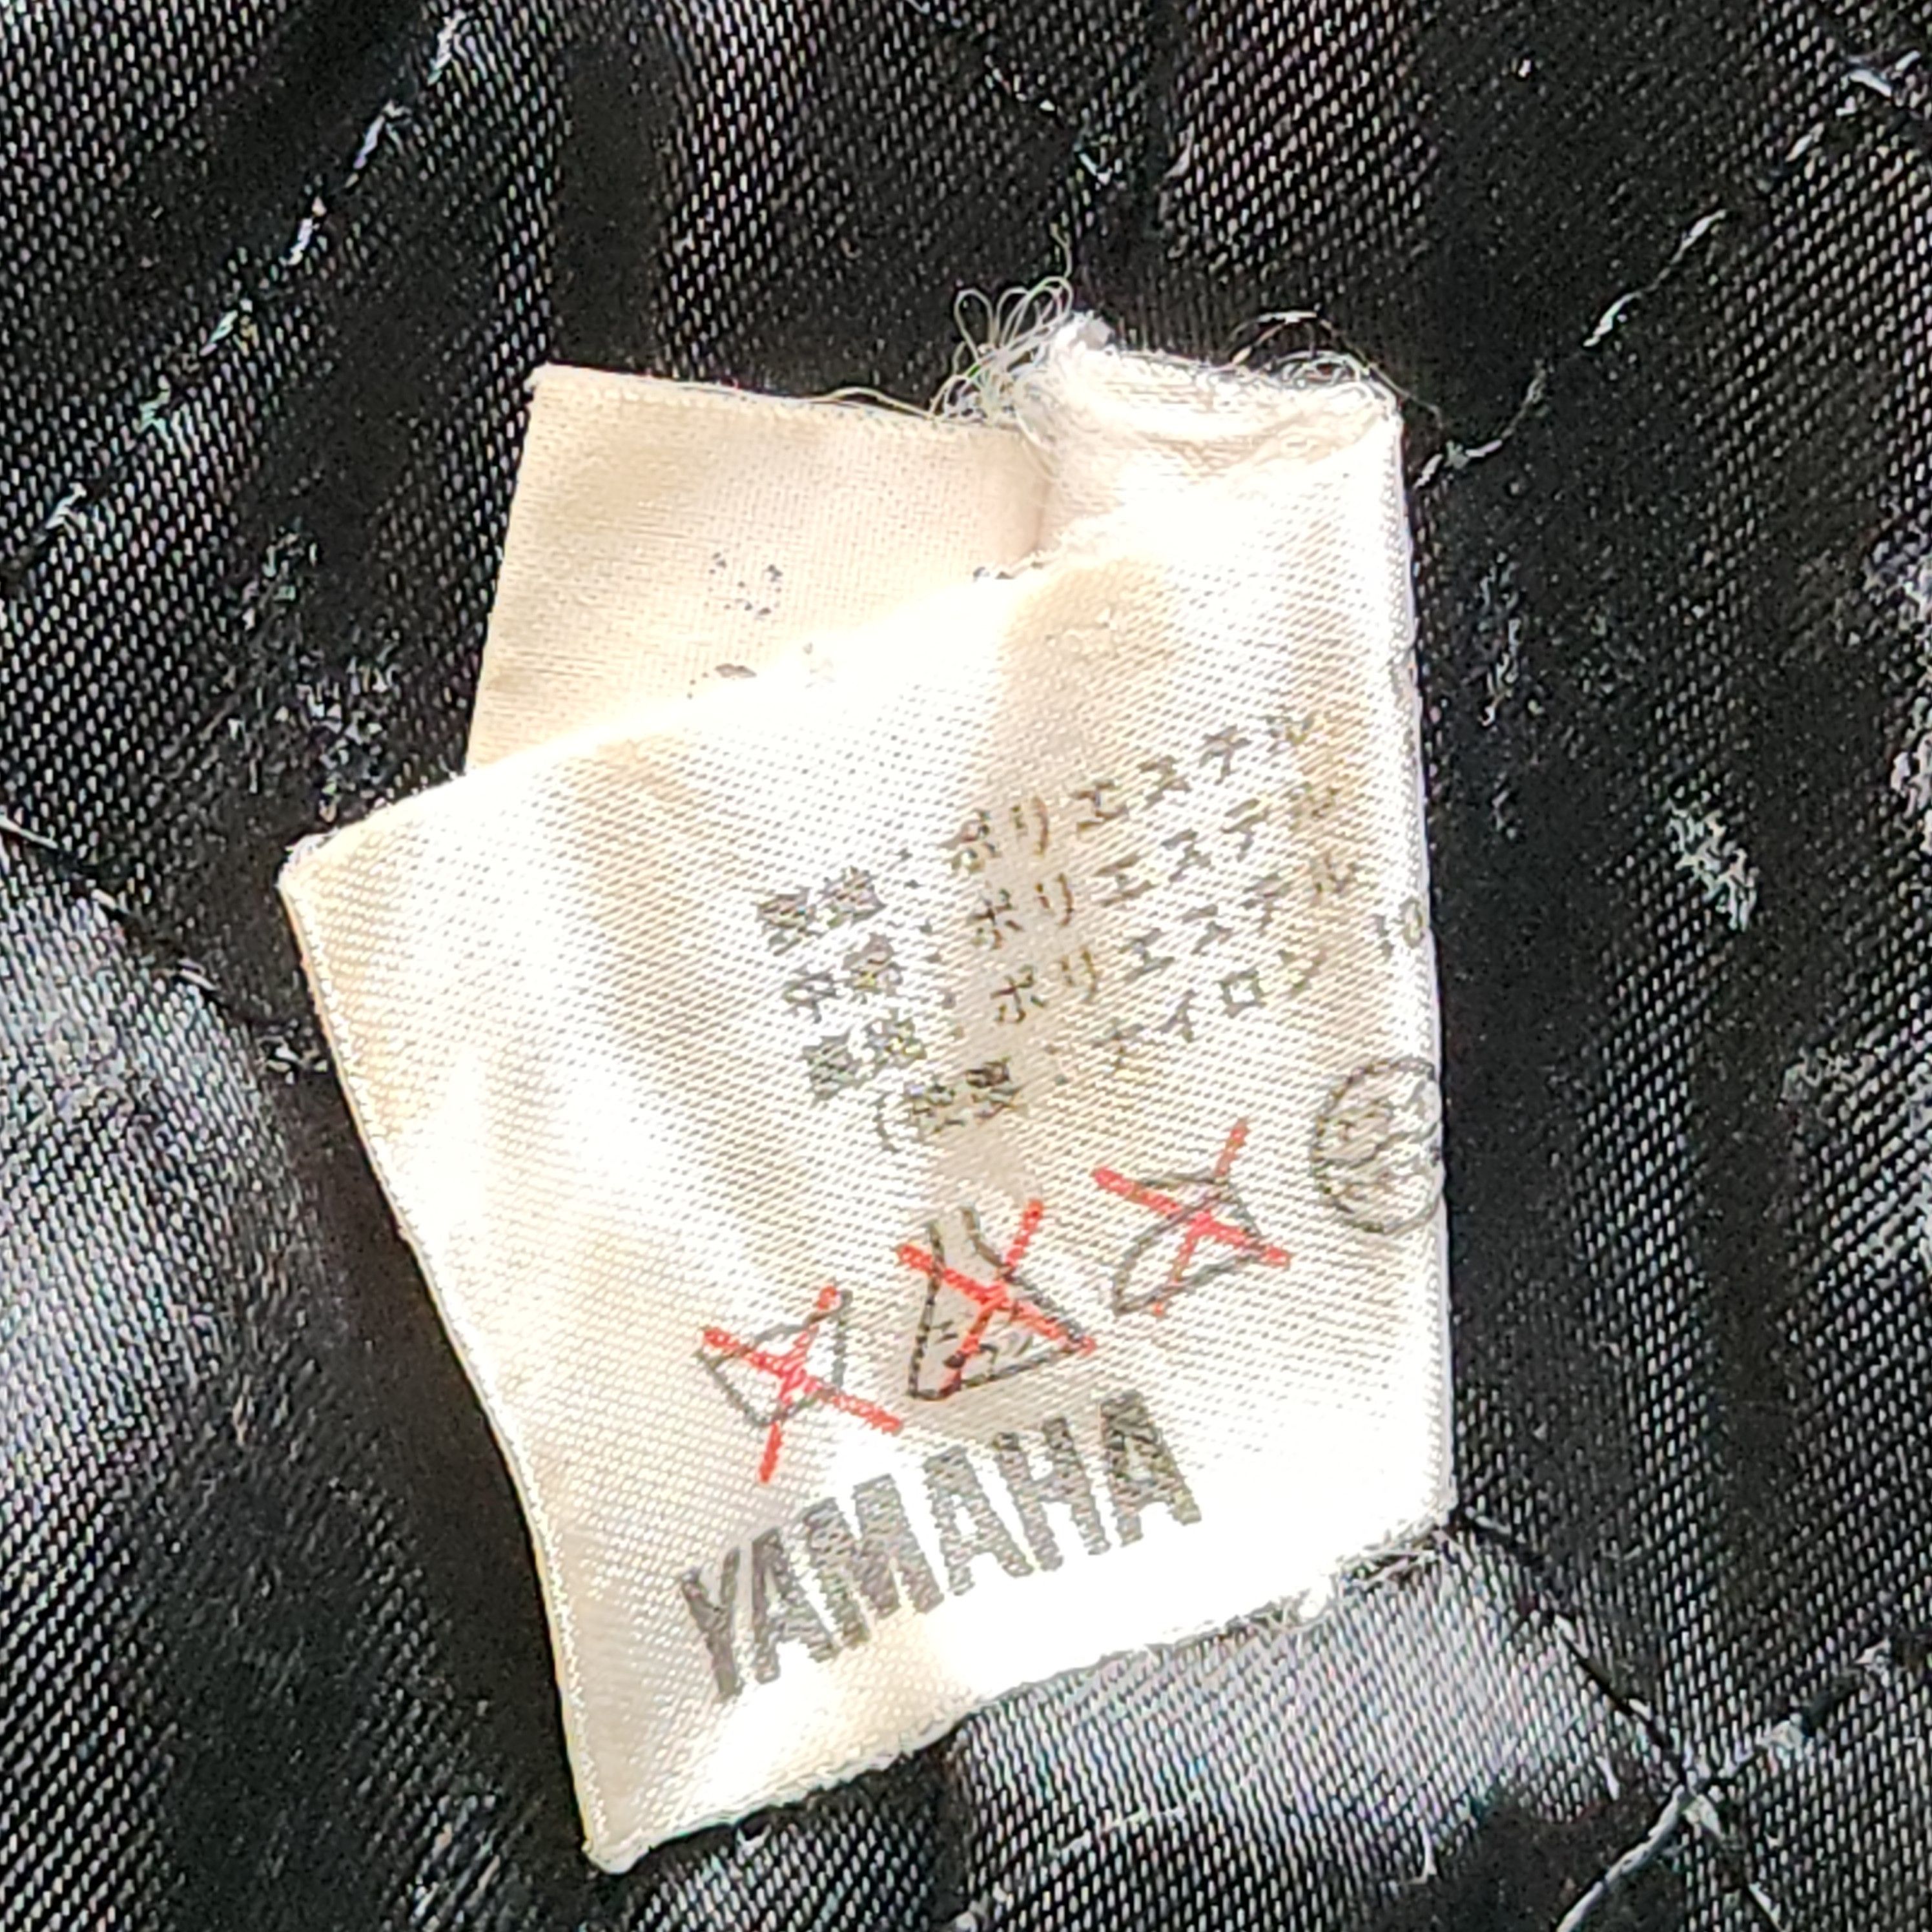 Yamaha - Yahama Snow Square Ski Jacket - 15